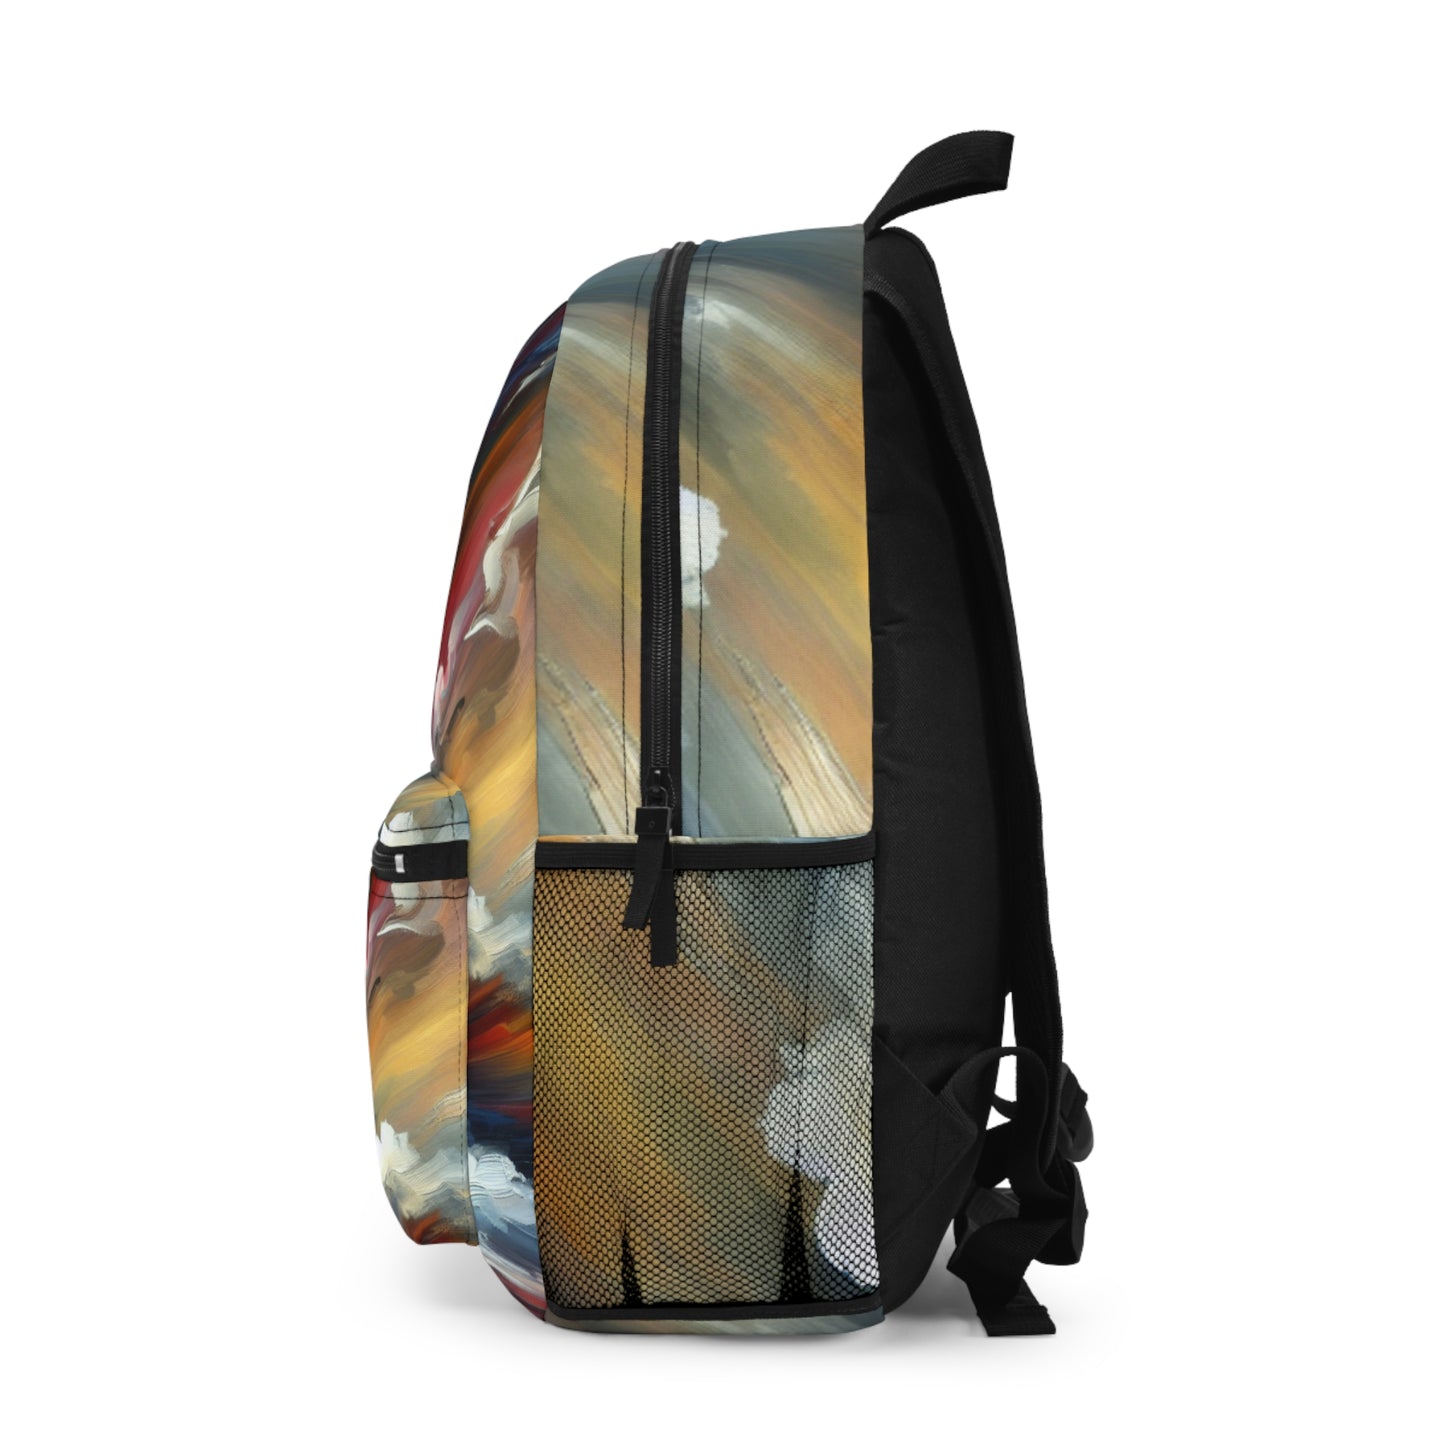 Aurora Flameburg - Backpack